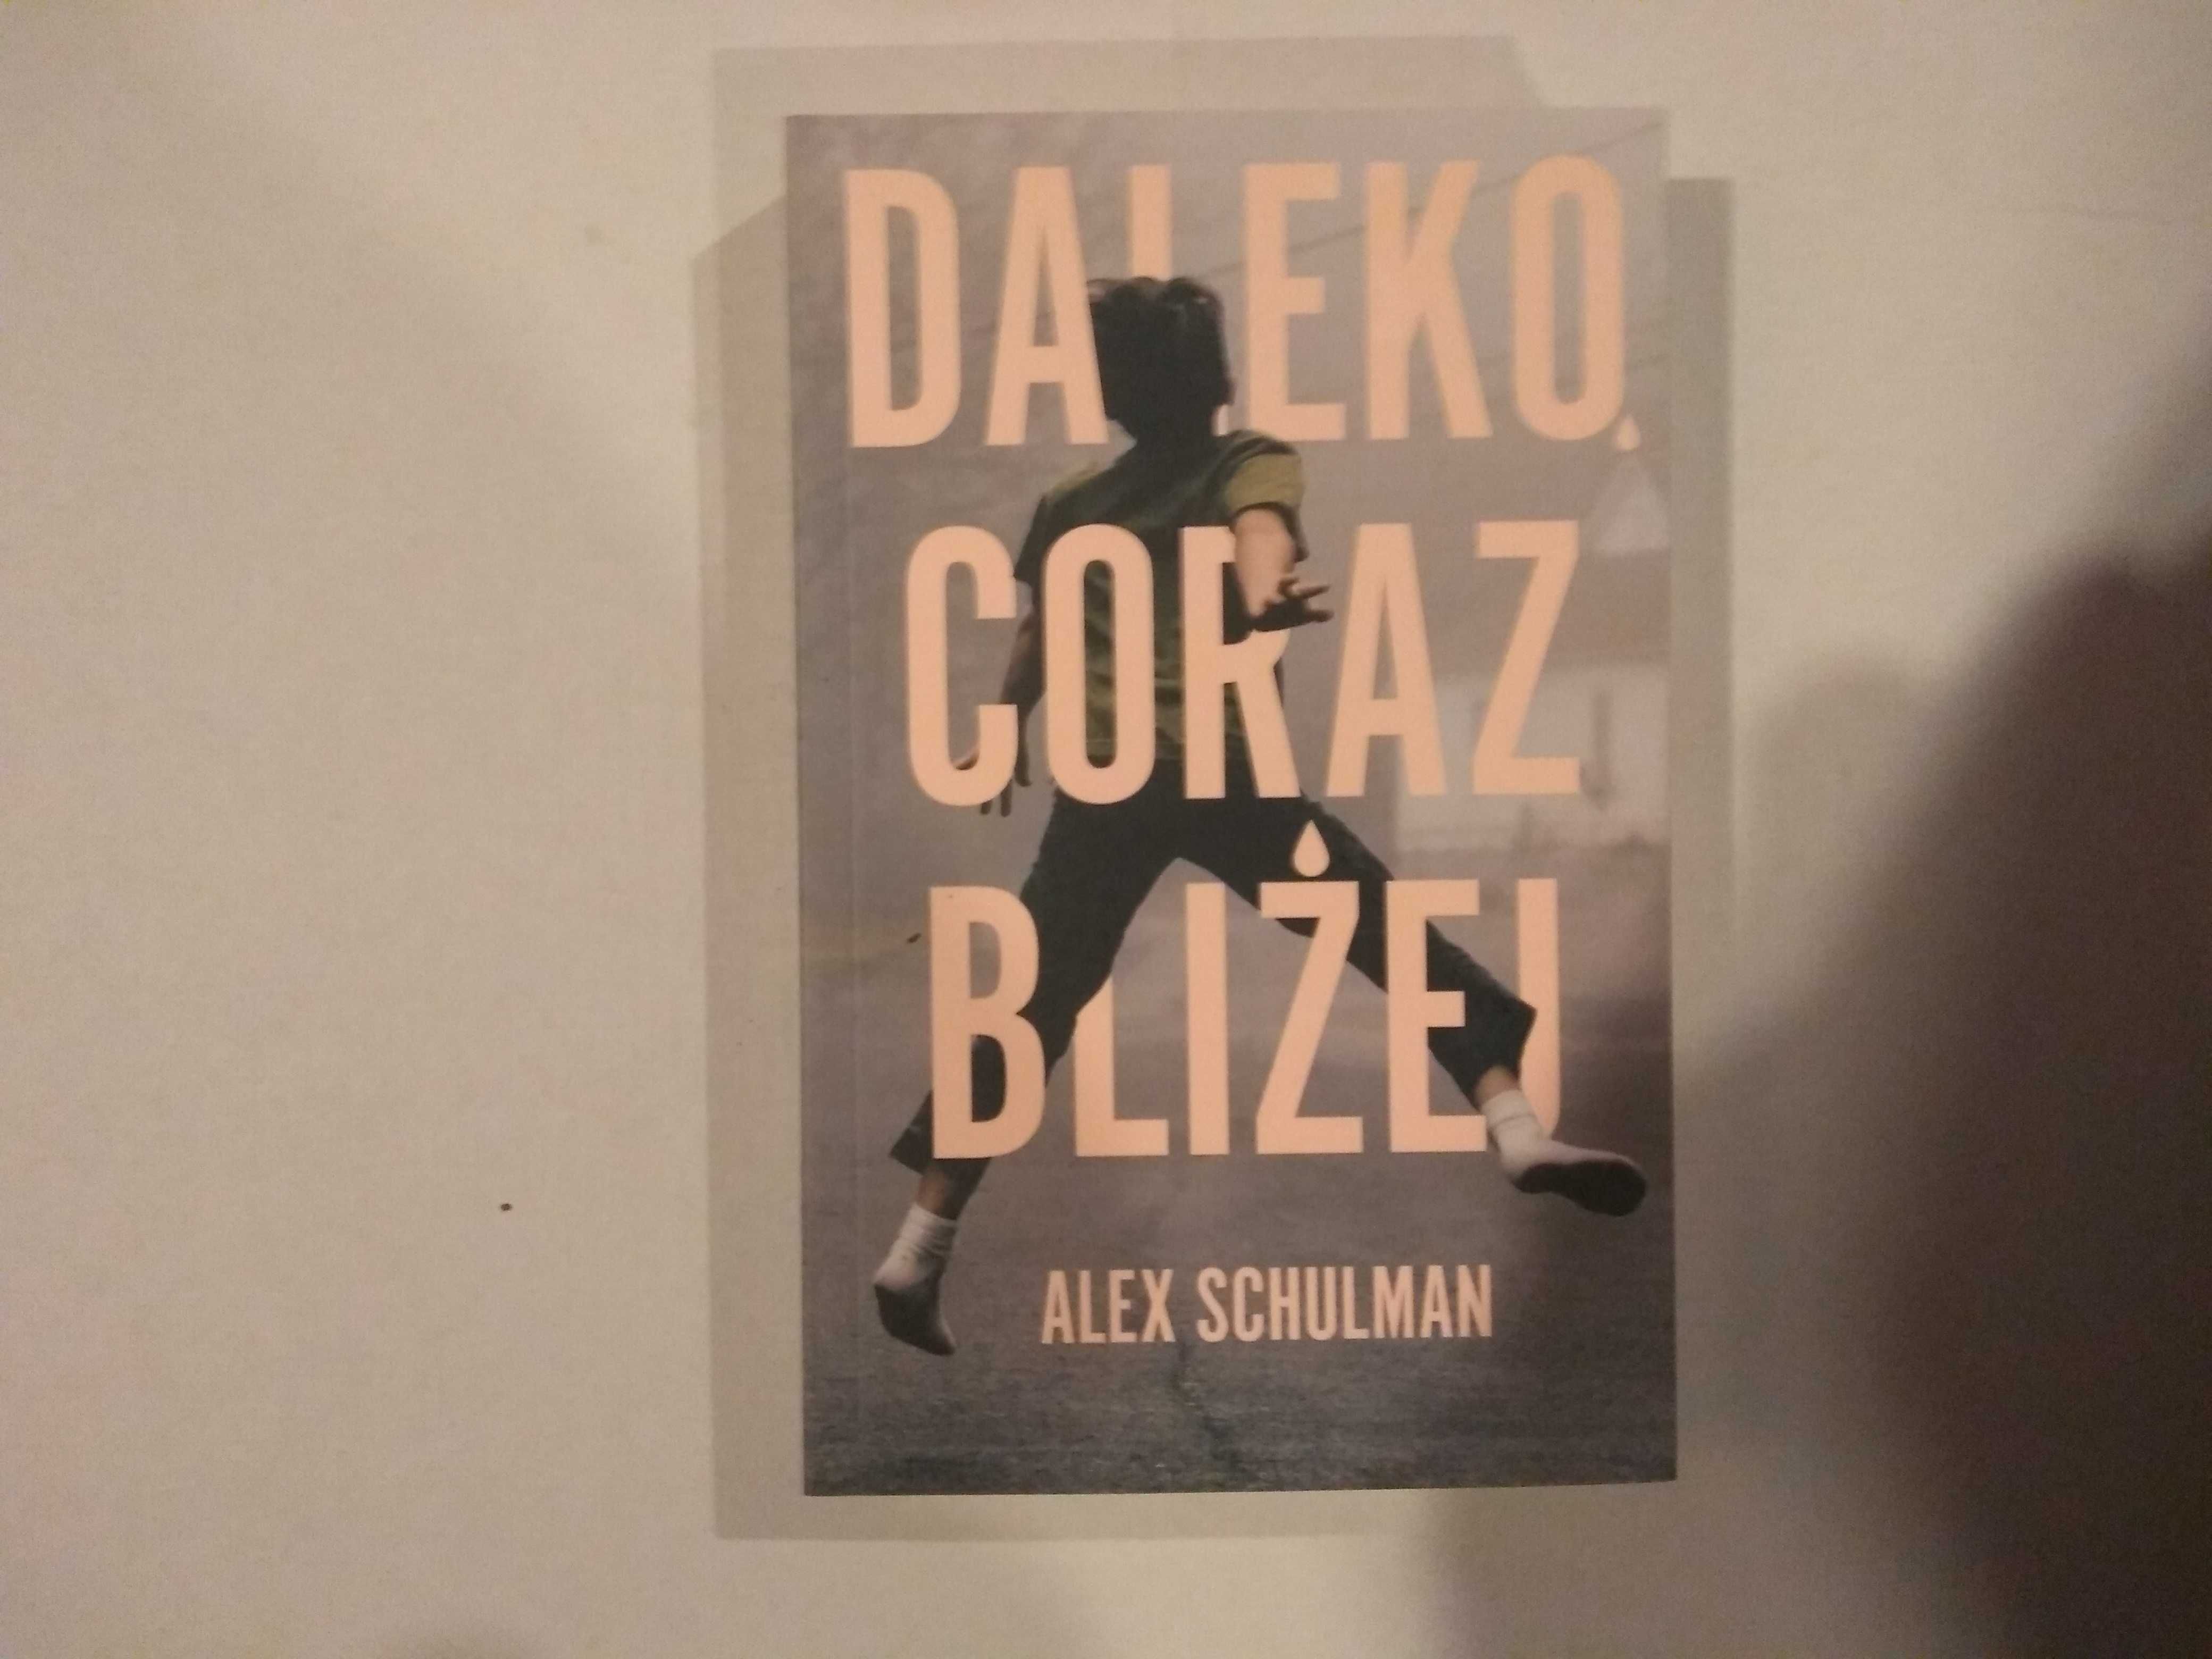 Dobra książka - Daleko coraz bliżej Alex Schulman (NOWA)